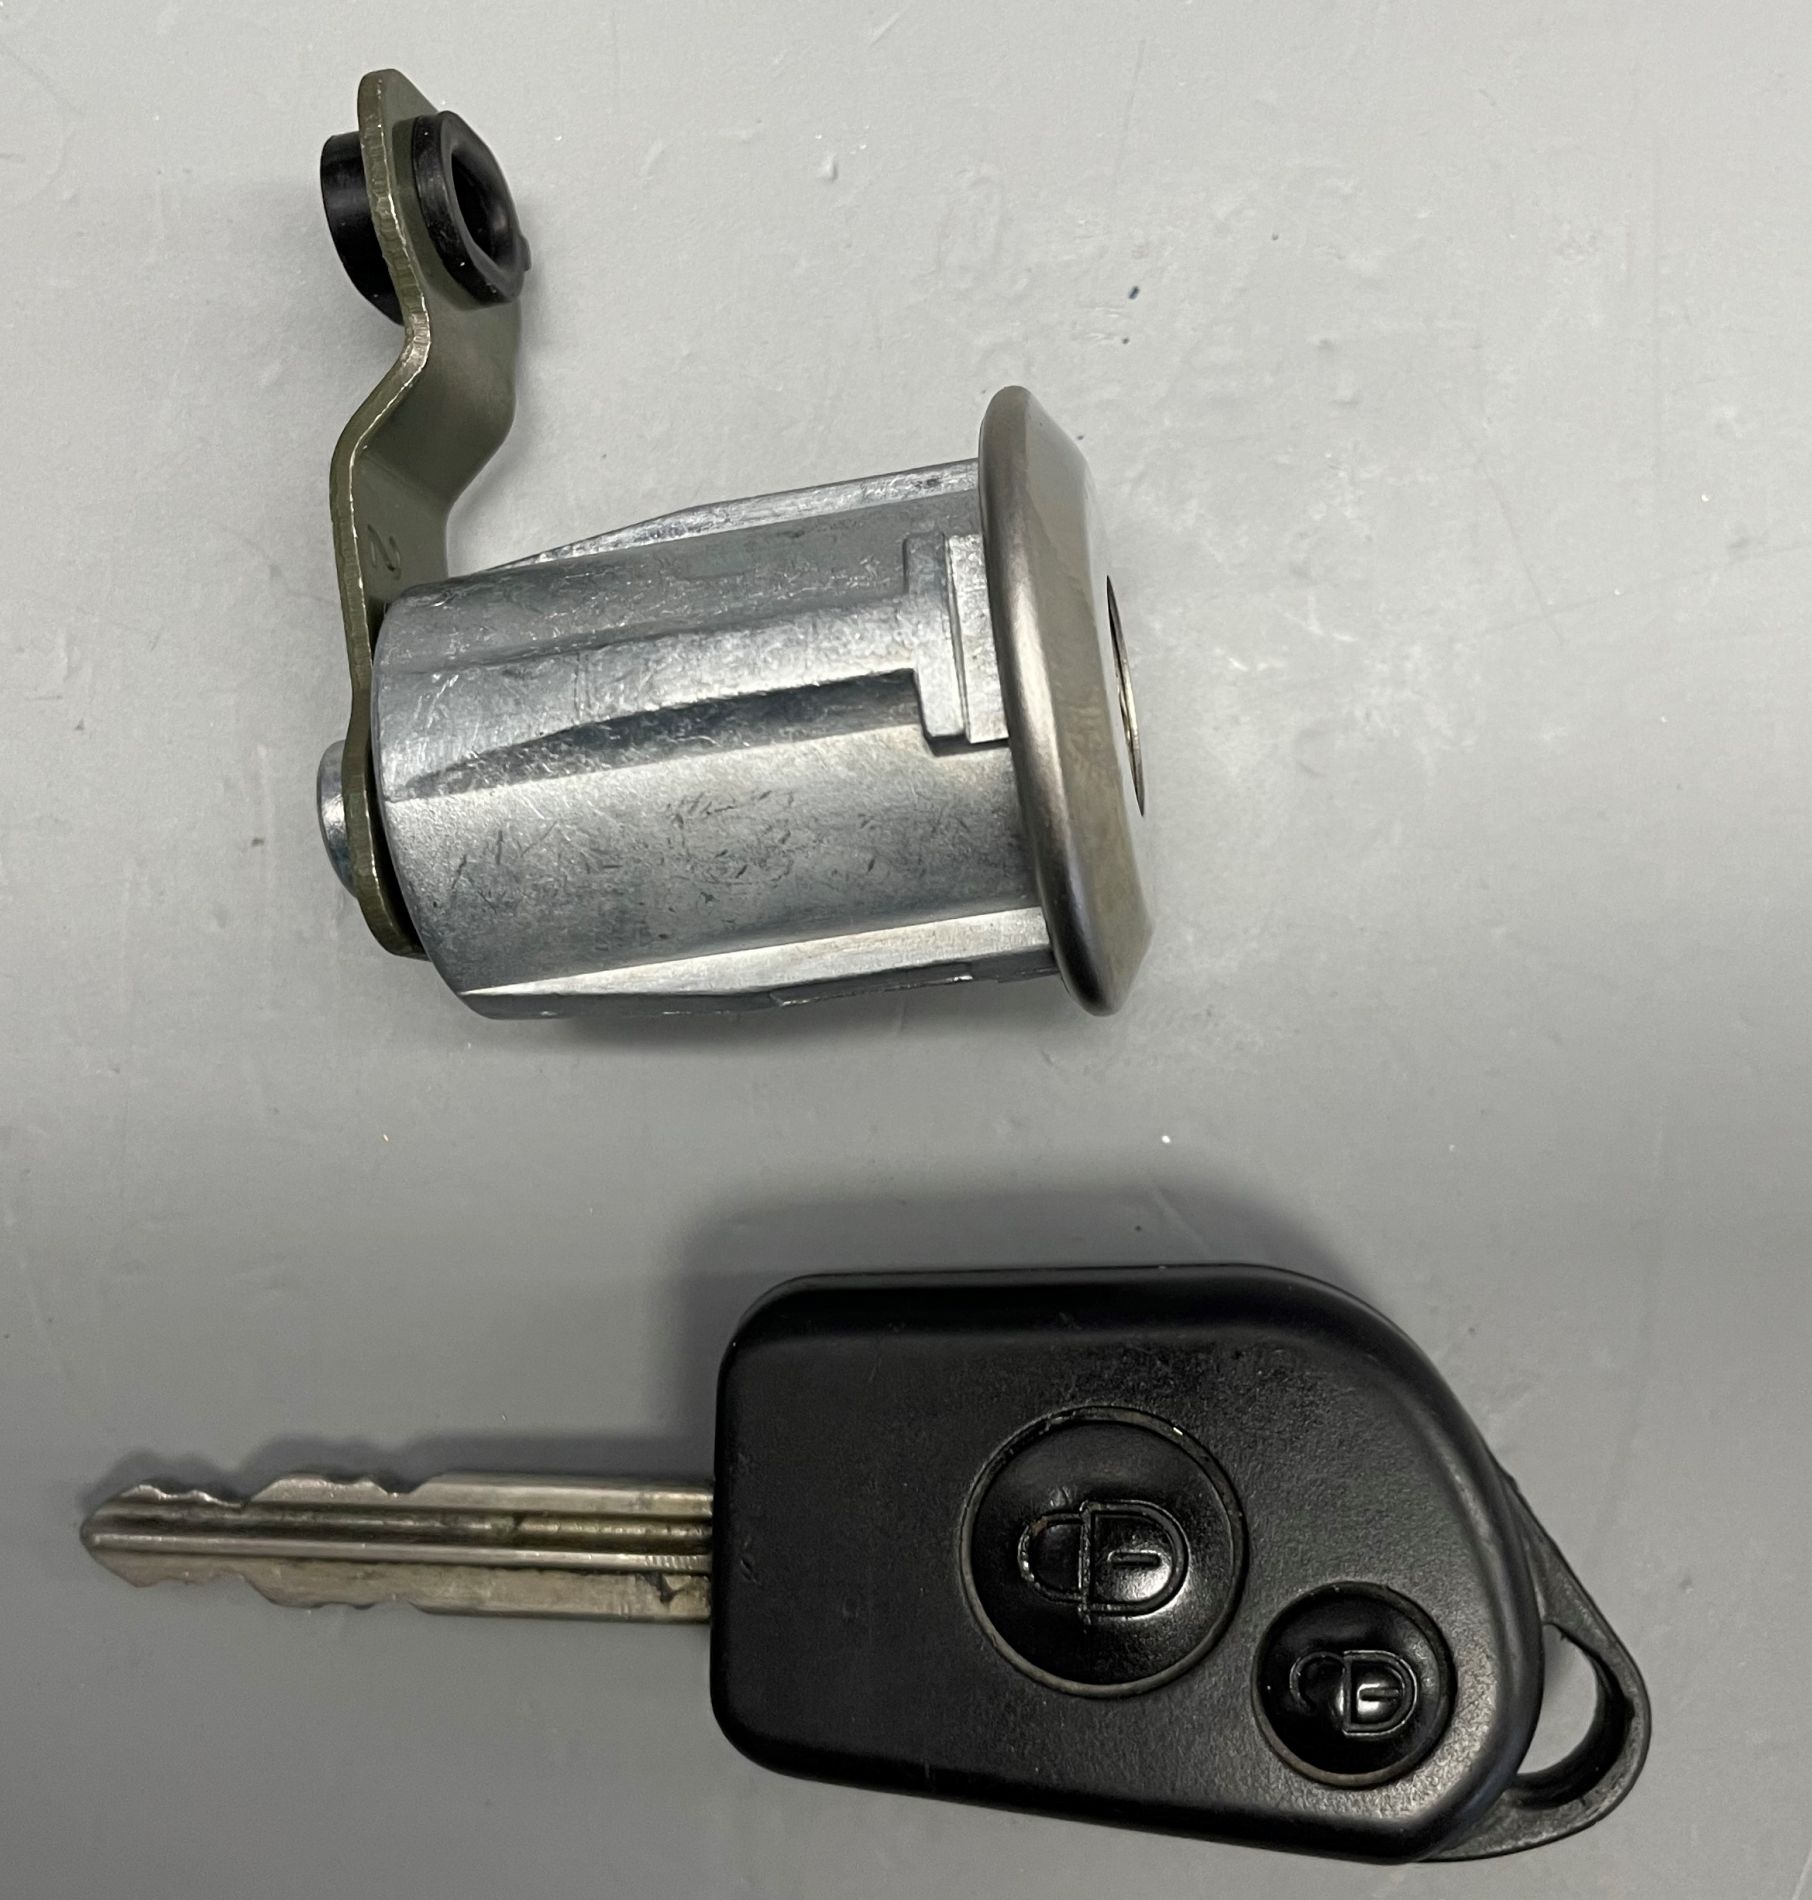 Naprawa zamka i dorobienie klucza do auta Citroen Berlingo